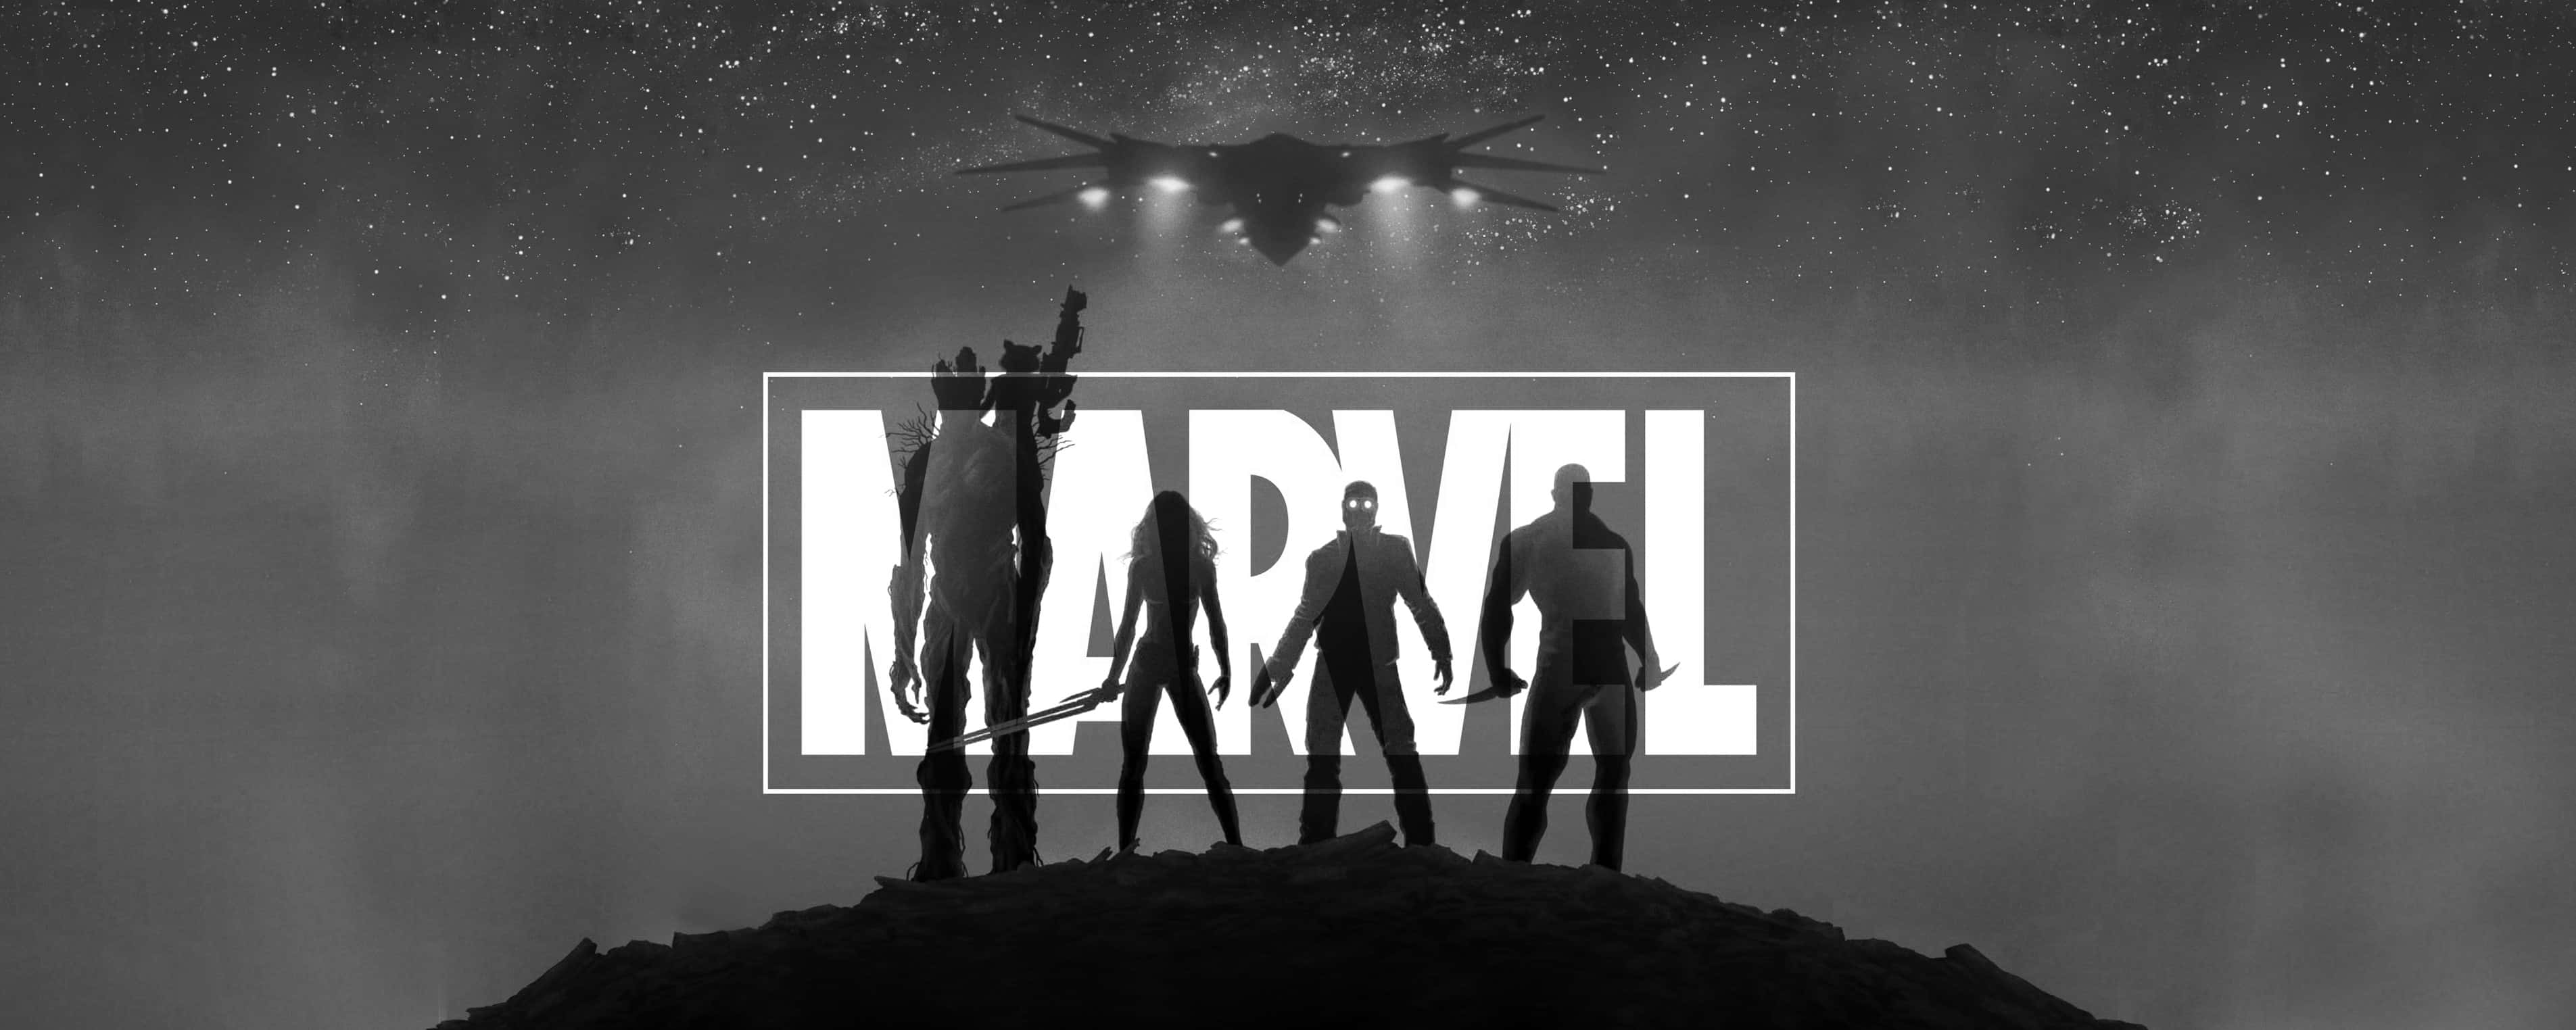 Marvel Avengers - Avengers - Avengers - Avengers - Ave Wallpaper